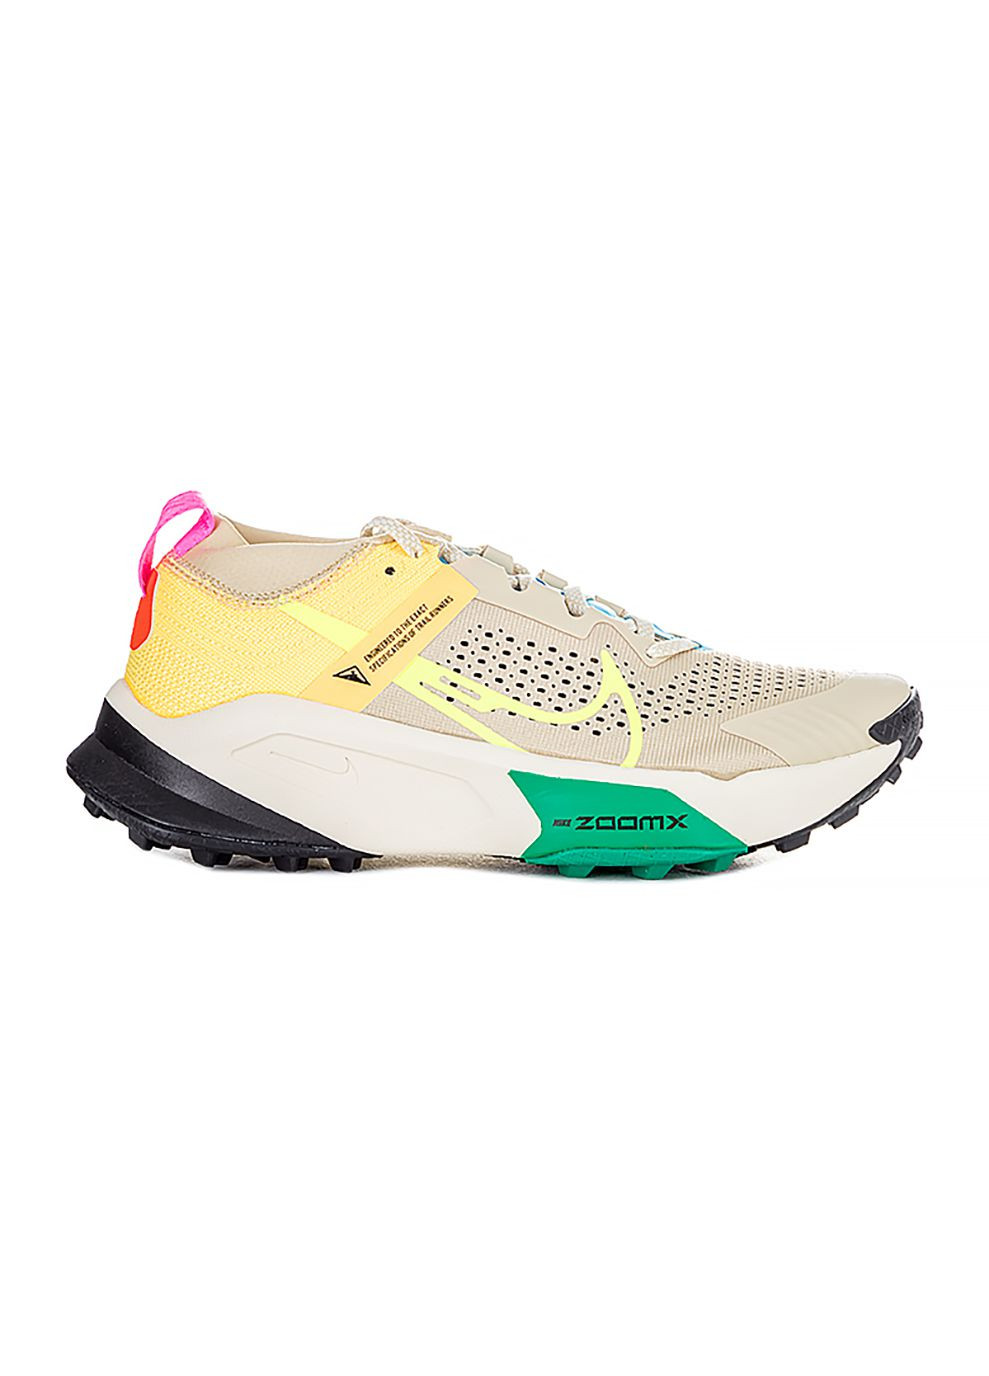 Цветные демисезонные мужские кроссовки w zoomx zegama trail комбинированный Nike